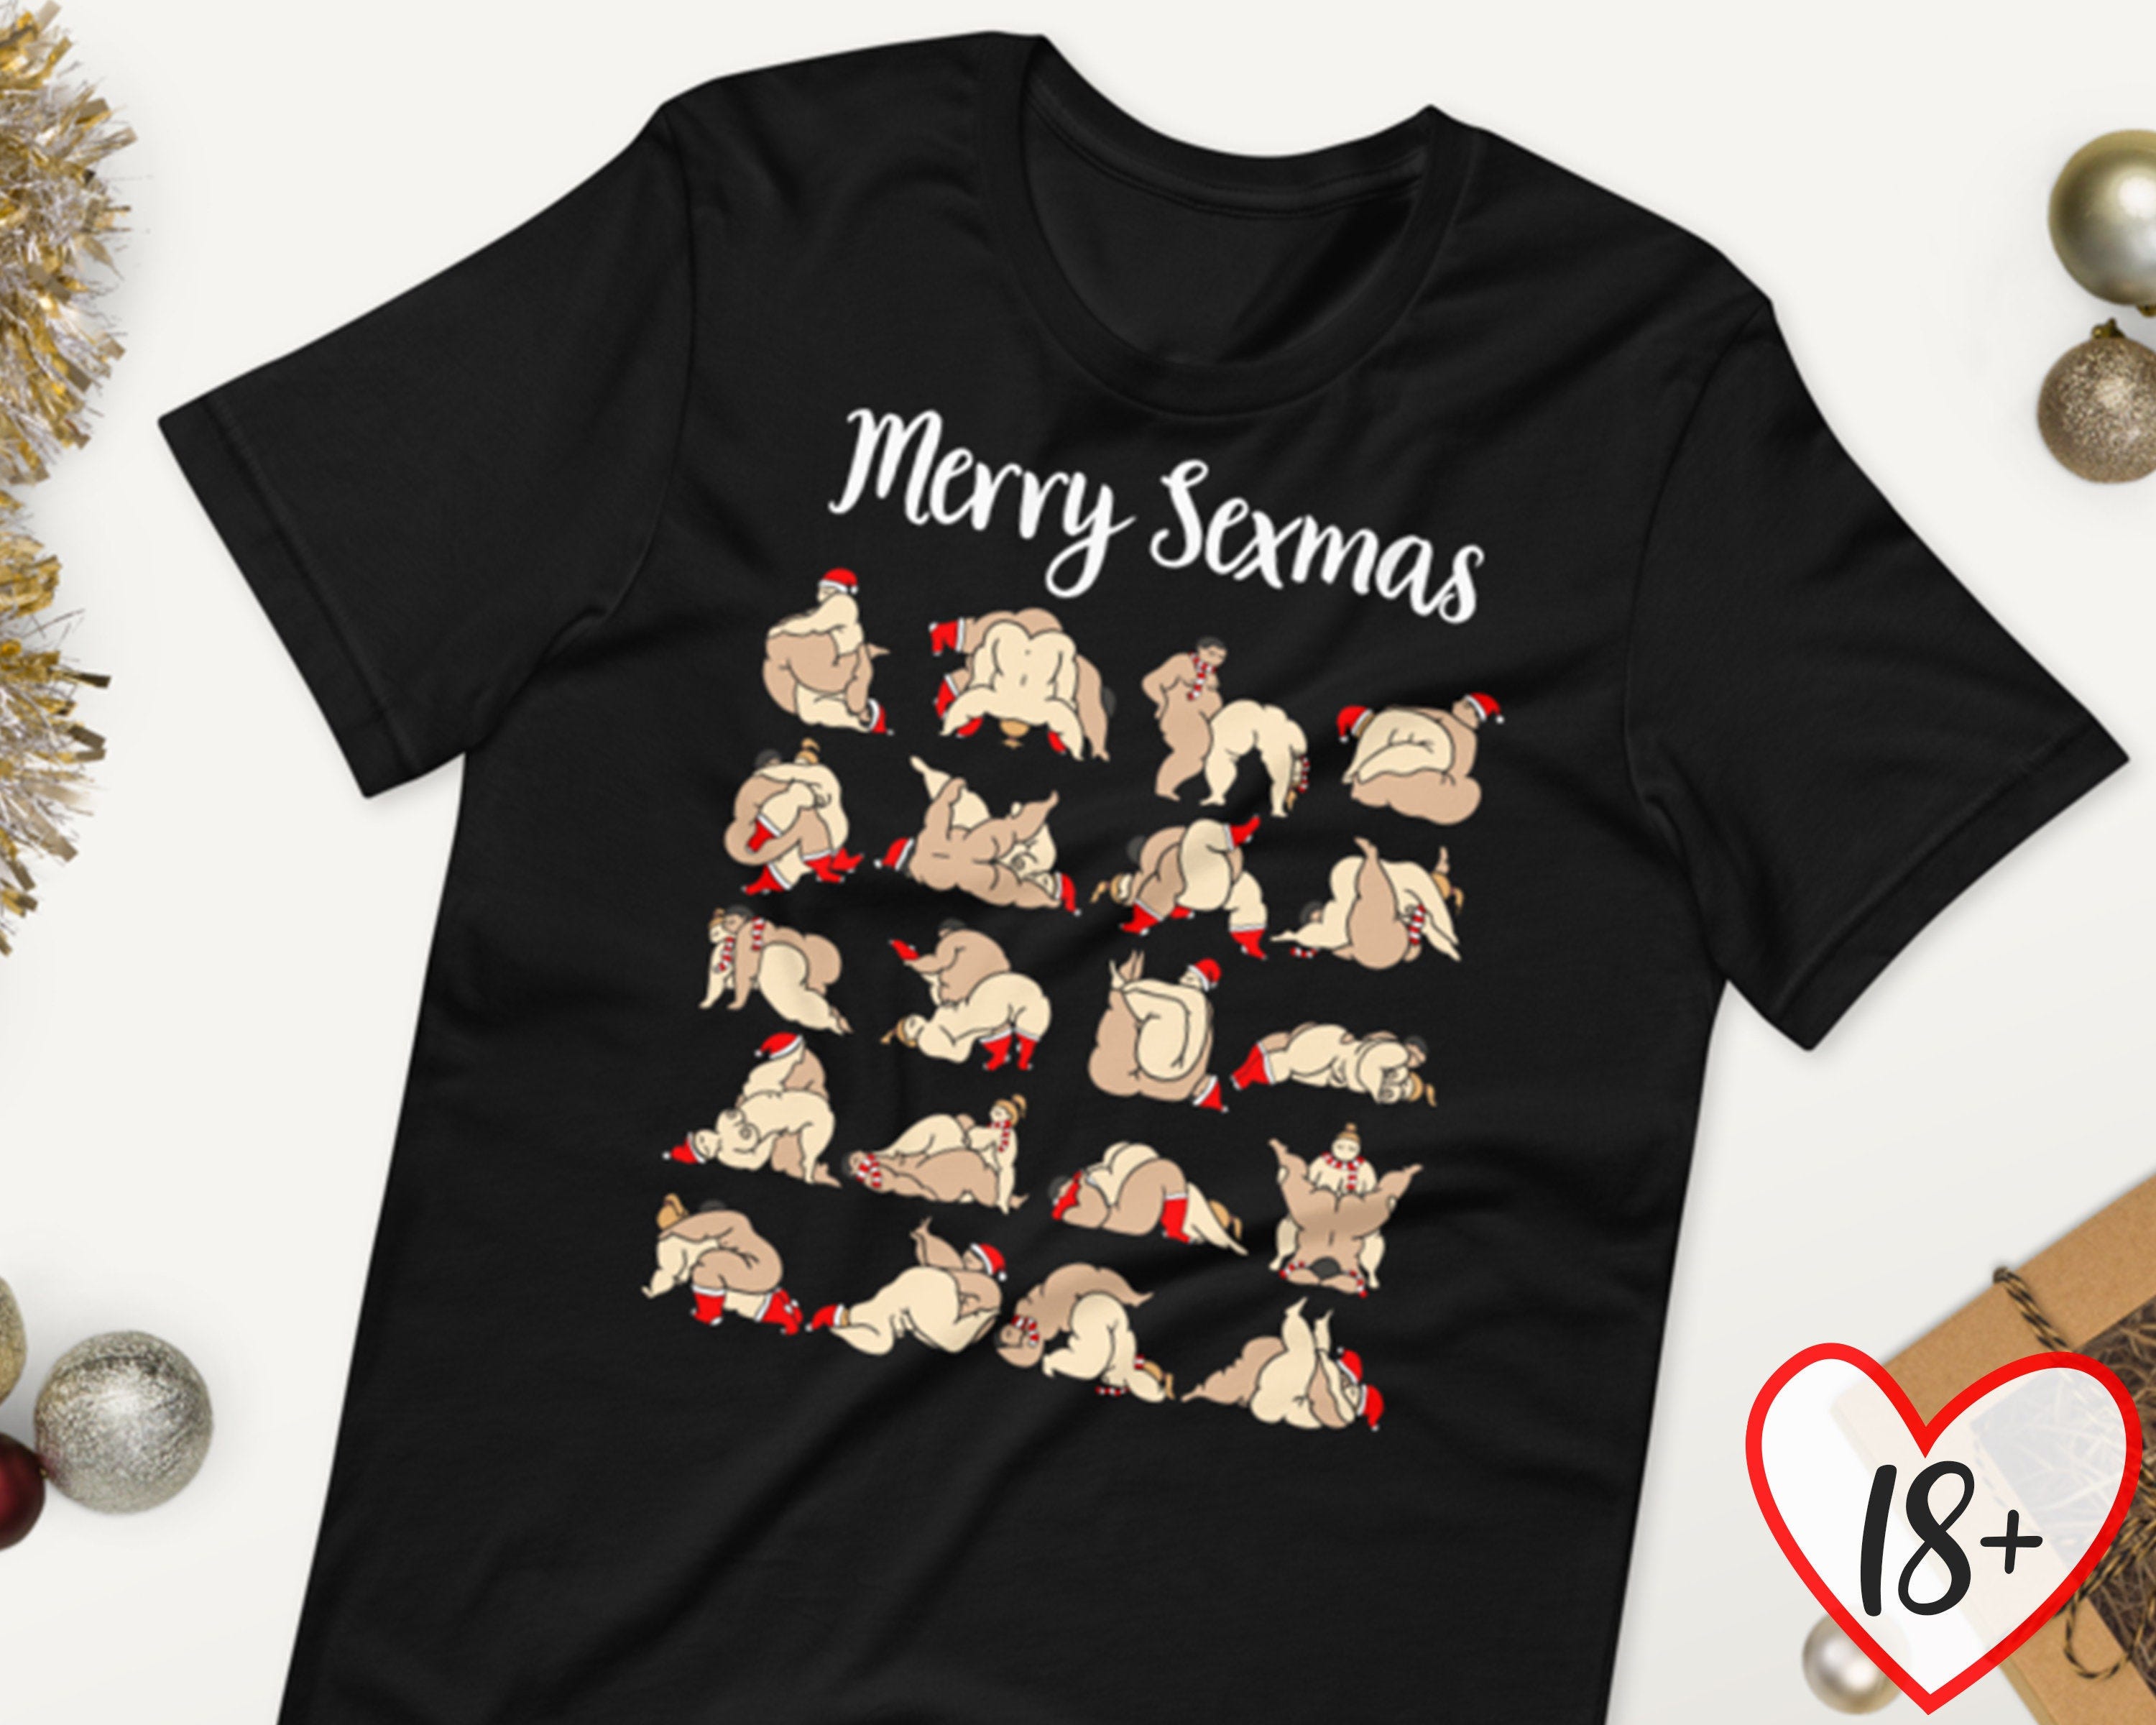 Ugly Christmas Shirts, Naughty Santa Shirt, Dirty Christmas, Funny Christmas Tee, Secret Santa Gift, Matching Shirts